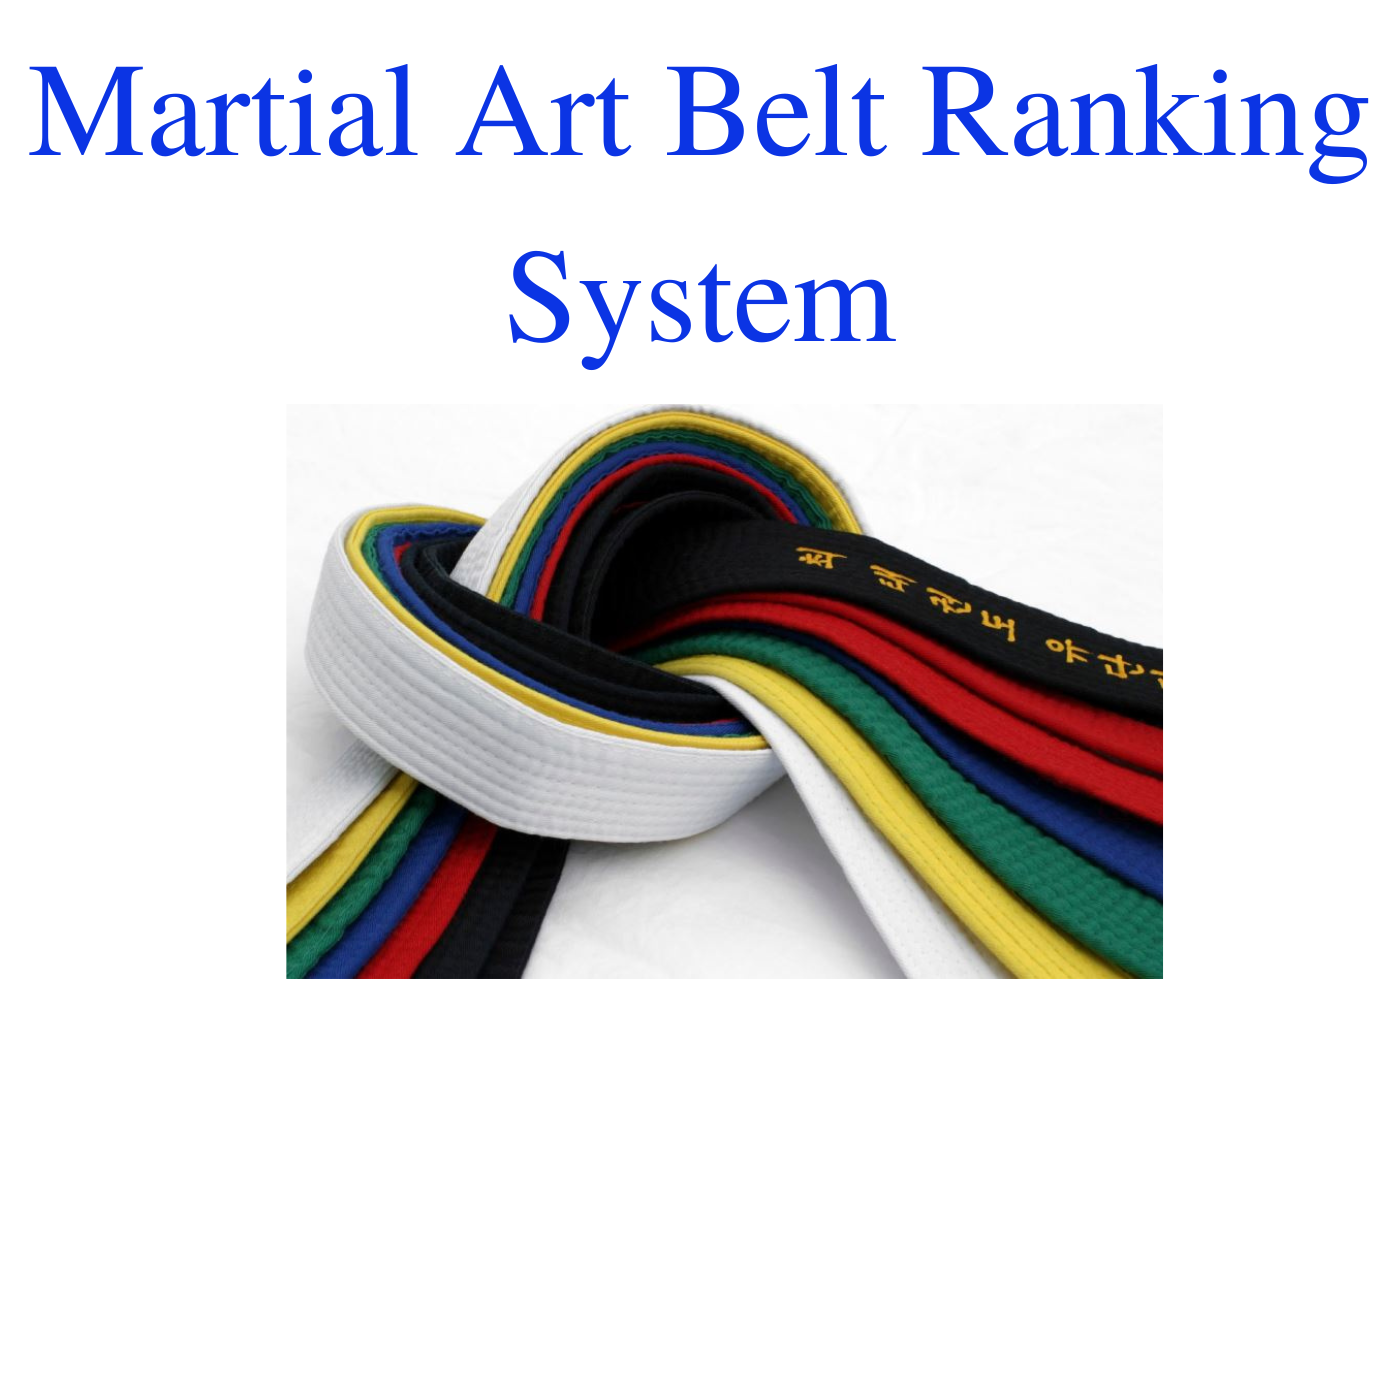 Martial Art Belt Ranking System